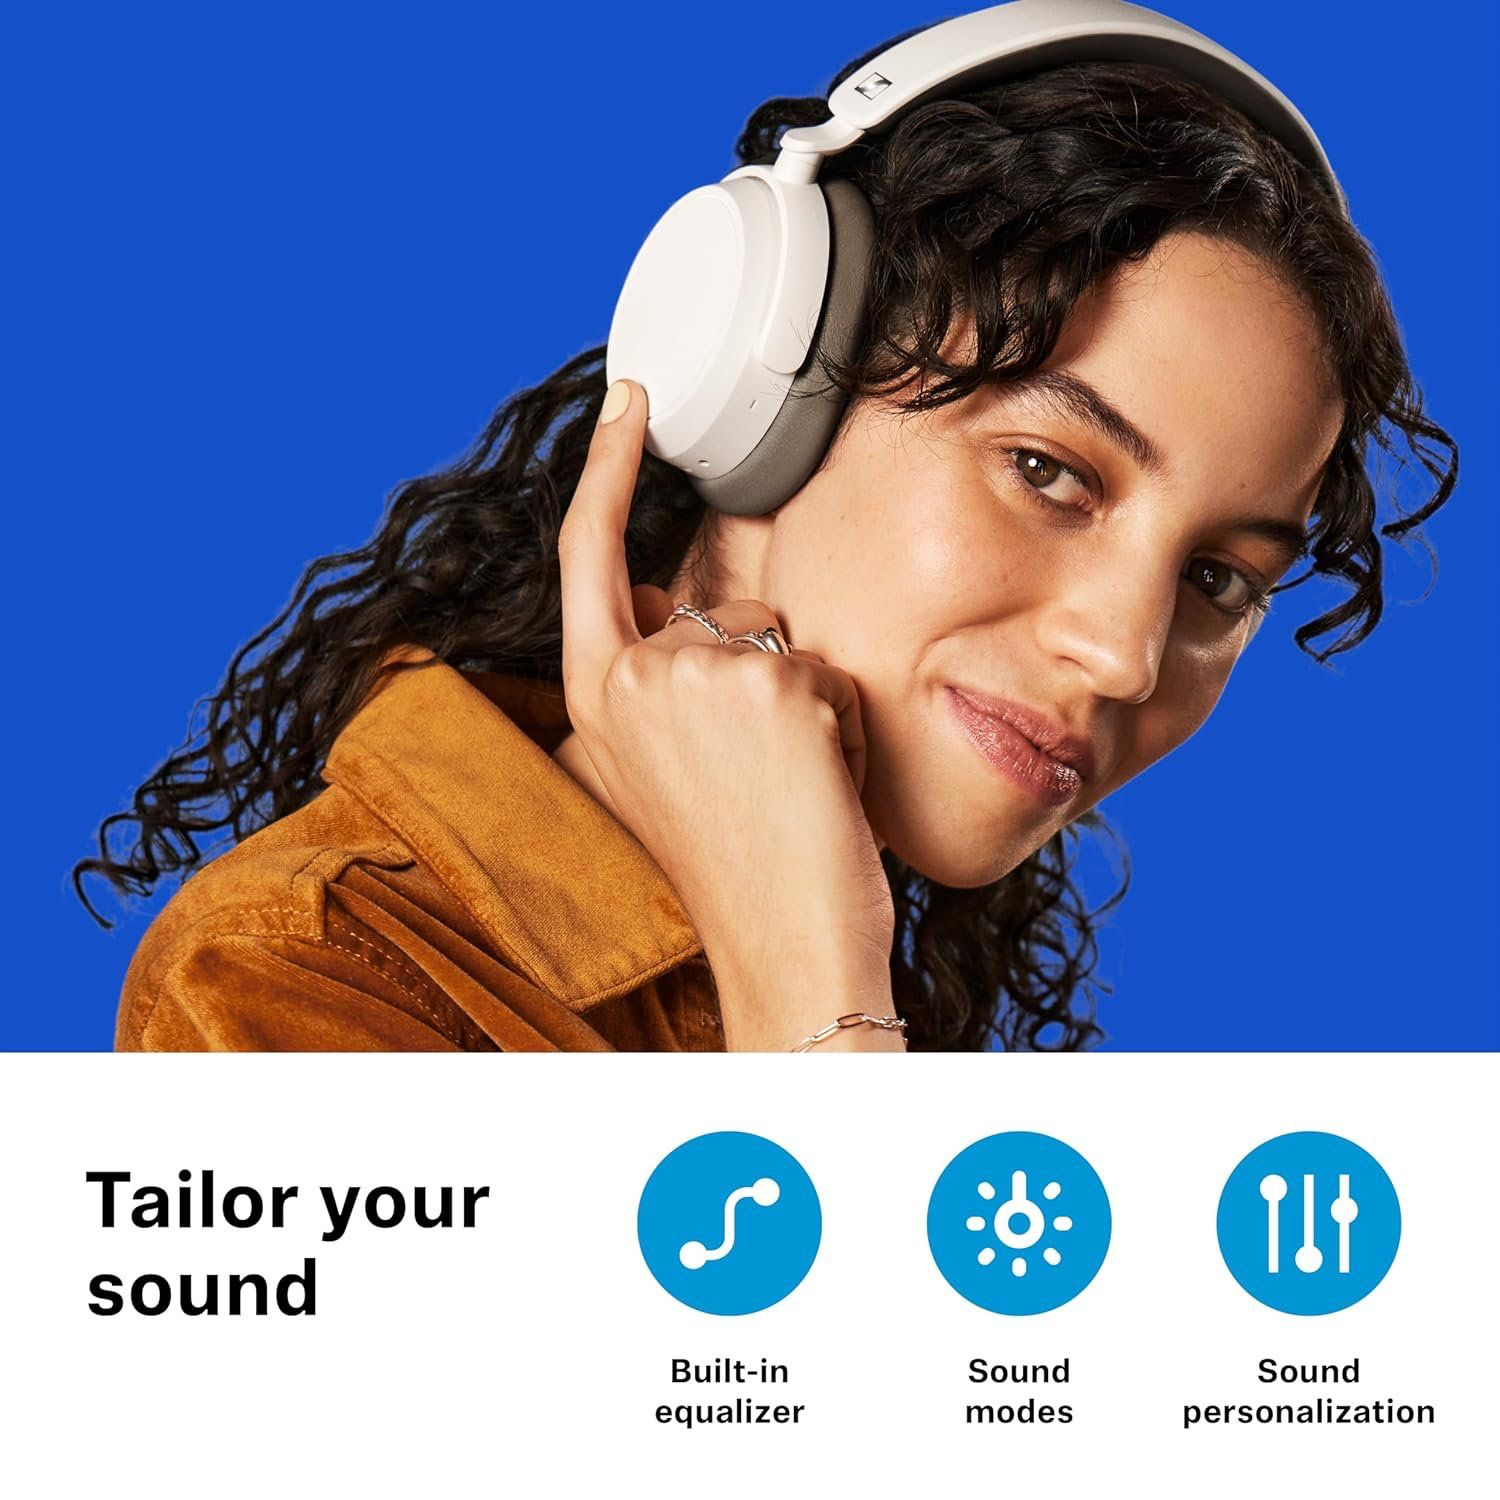 Sennheiser ACCENTUM Plus is designed for audiophiles